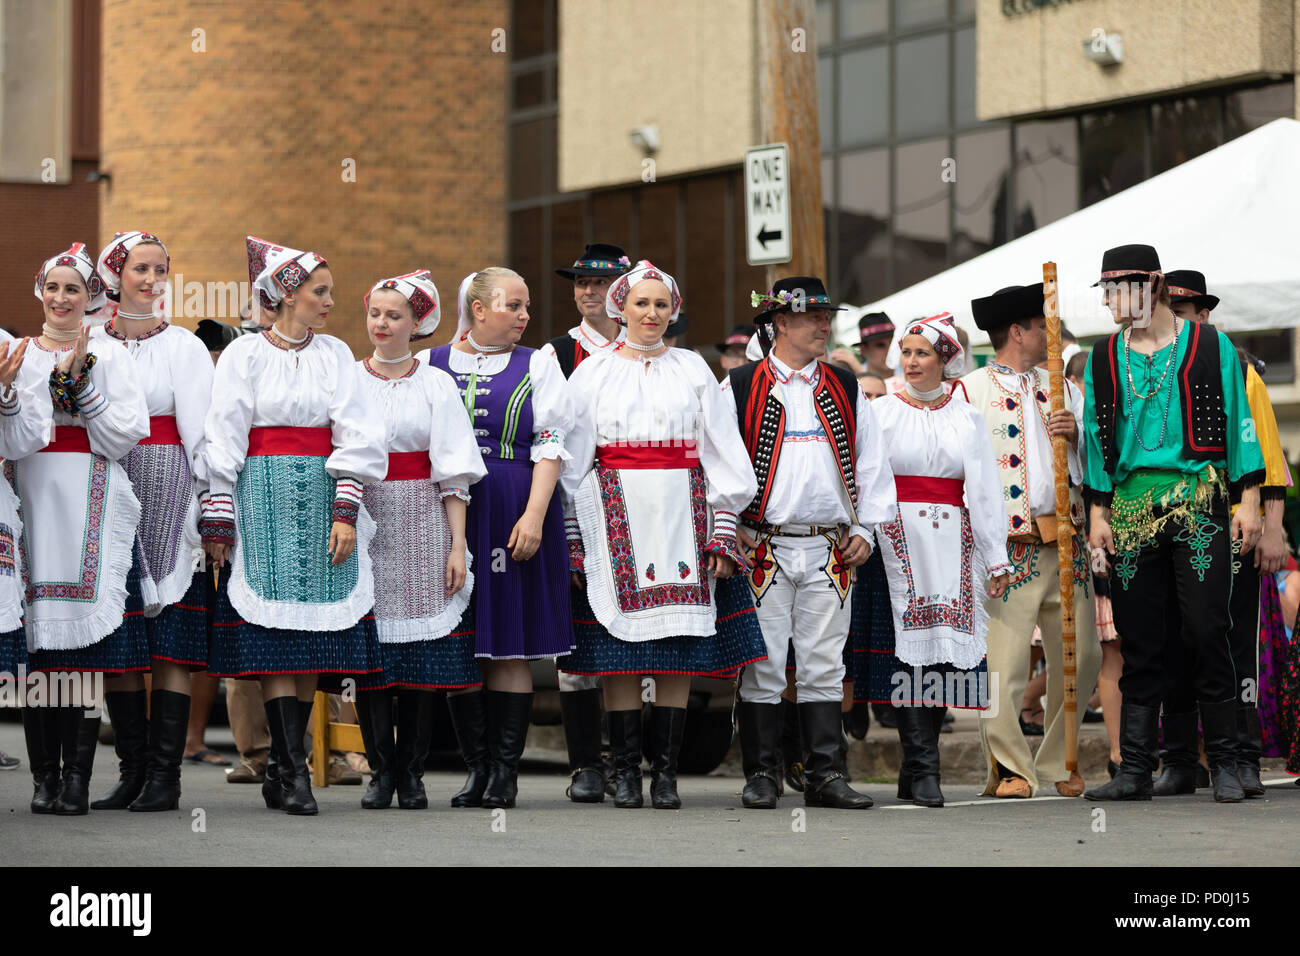 Wittling, Indiana, USA - Juli 28, 2018 Männer und Frauen tragen traditionelle slowakische Kleidung traditionelle slowakische Tänze an der Pierogi Fest durchführen Stockfoto